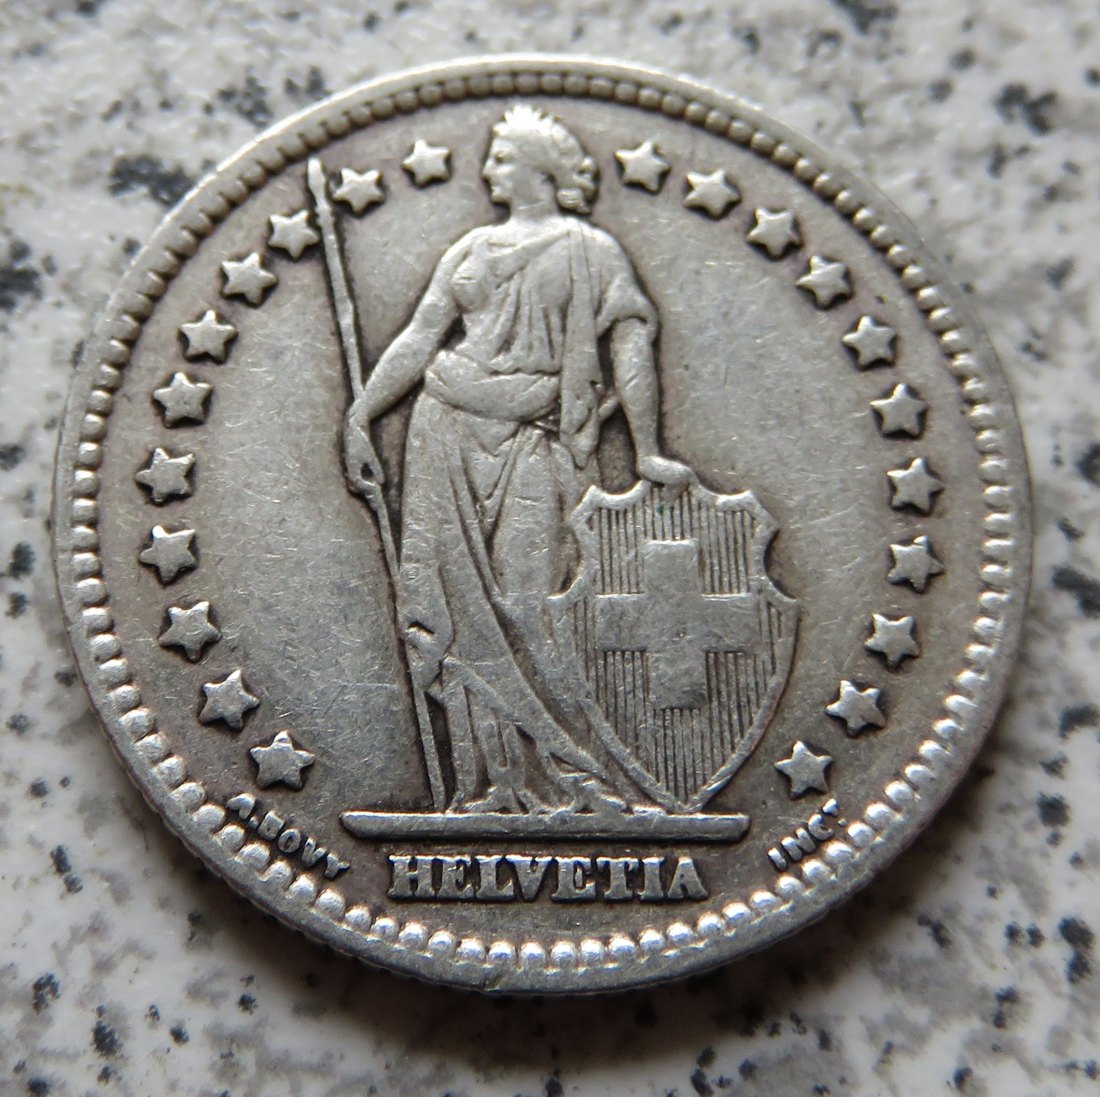  Schweiz 1 Franken 1928   